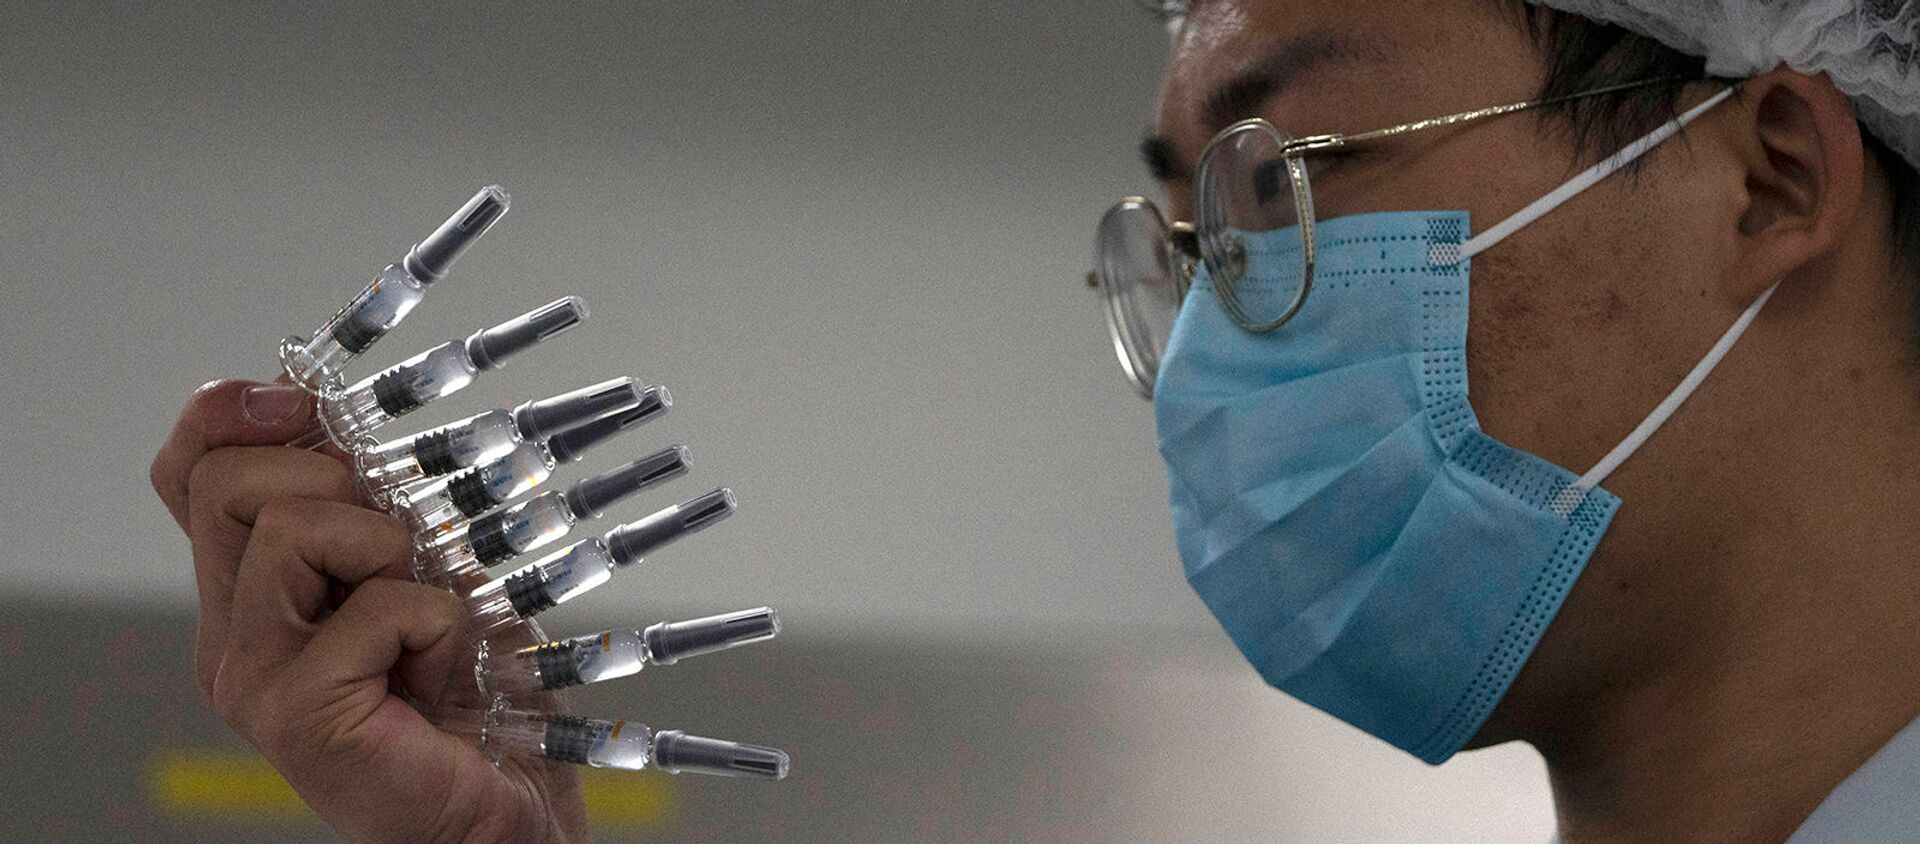 Сотрудник вручную проверяет шприцы с вакциной SARS CoV-2 от COVID-19, производимые SinoVac на ее заводе (24 сентября 2020). Пекин - Sputnik Արմենիա, 1920, 20.02.2021